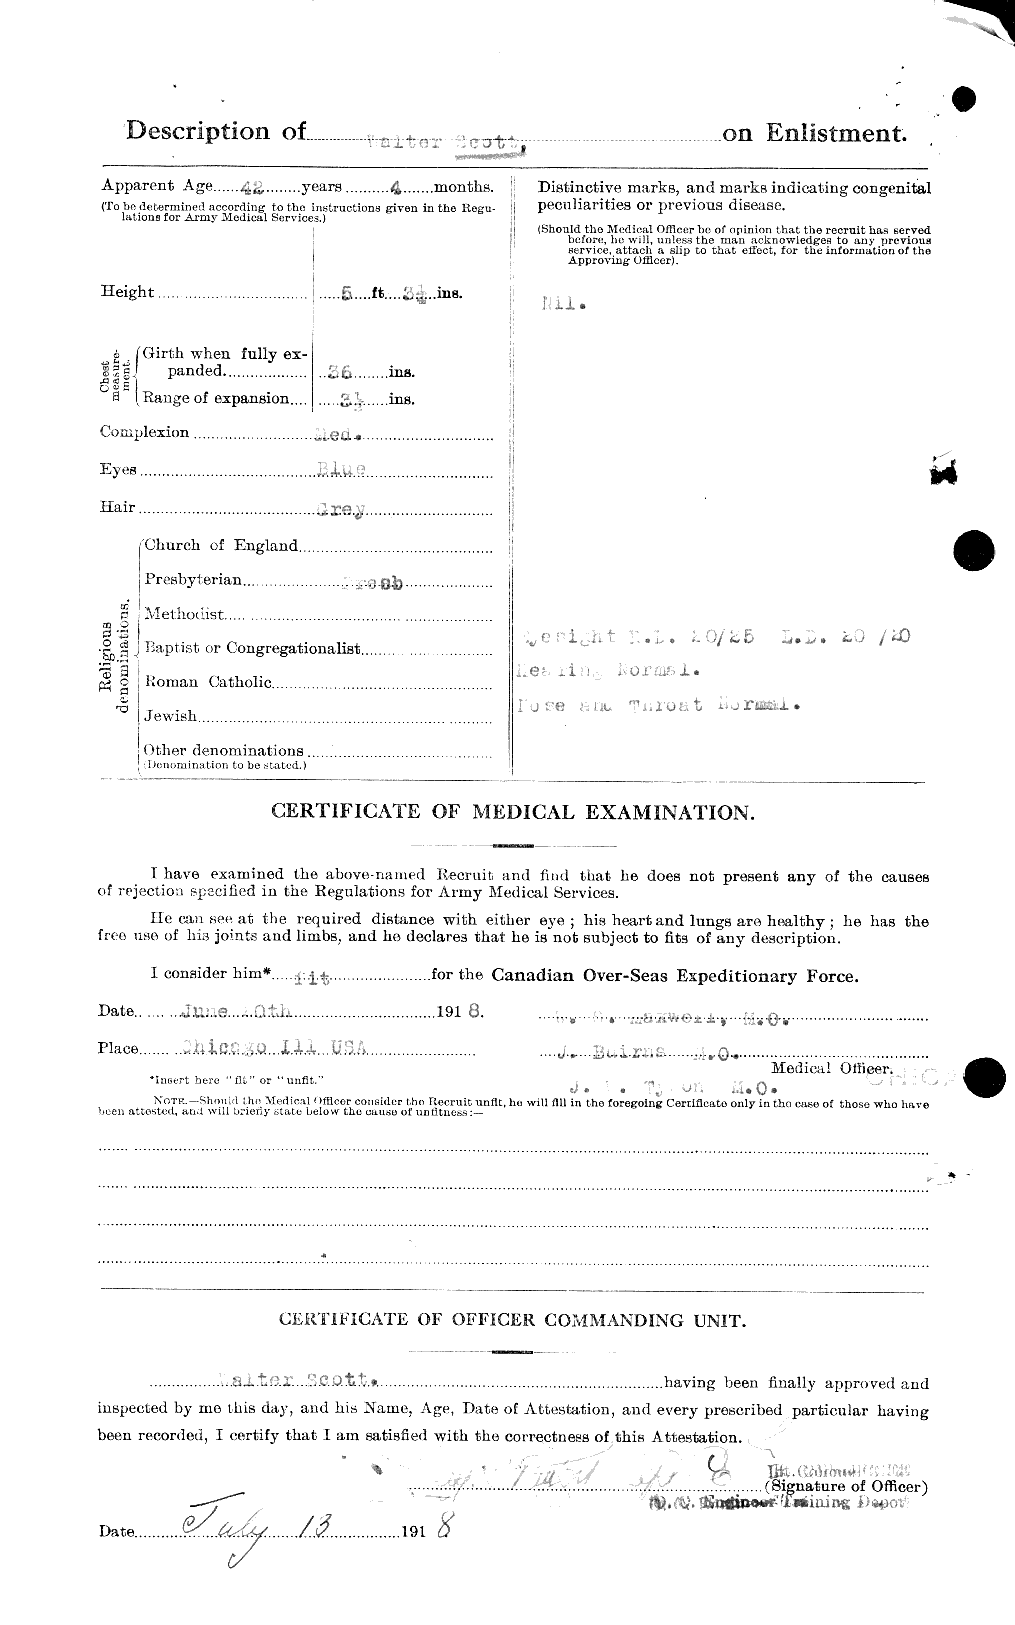 Dossiers du Personnel de la Première Guerre mondiale - CEC 005489b